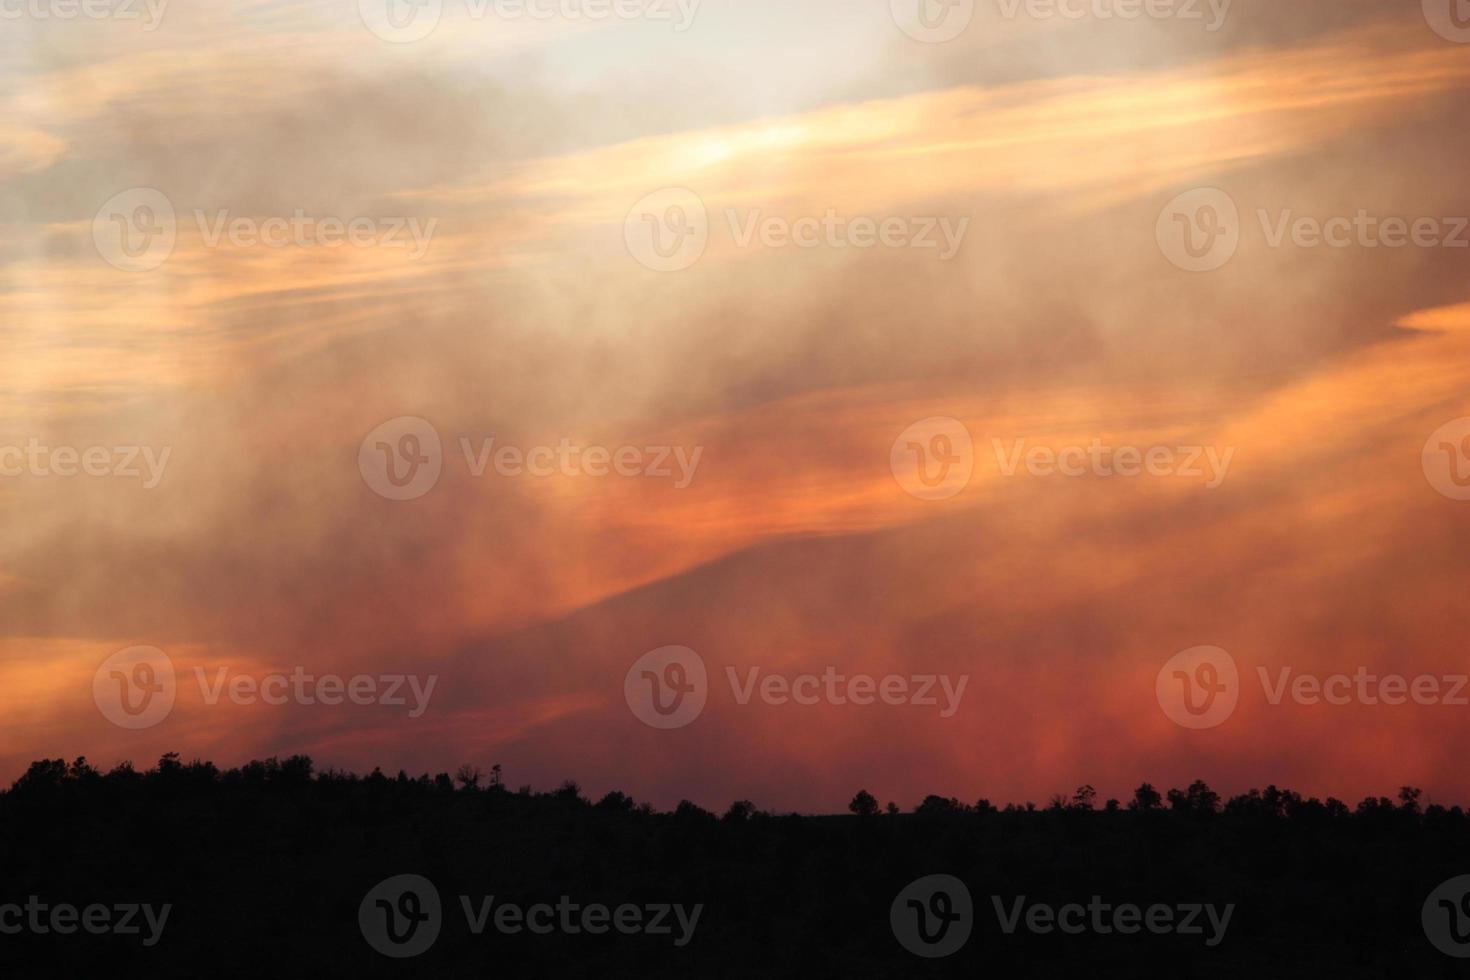 couches translucides de fumée et de nuages dans le ciel au coucher du soleil lors d'un incendie de forêt photo